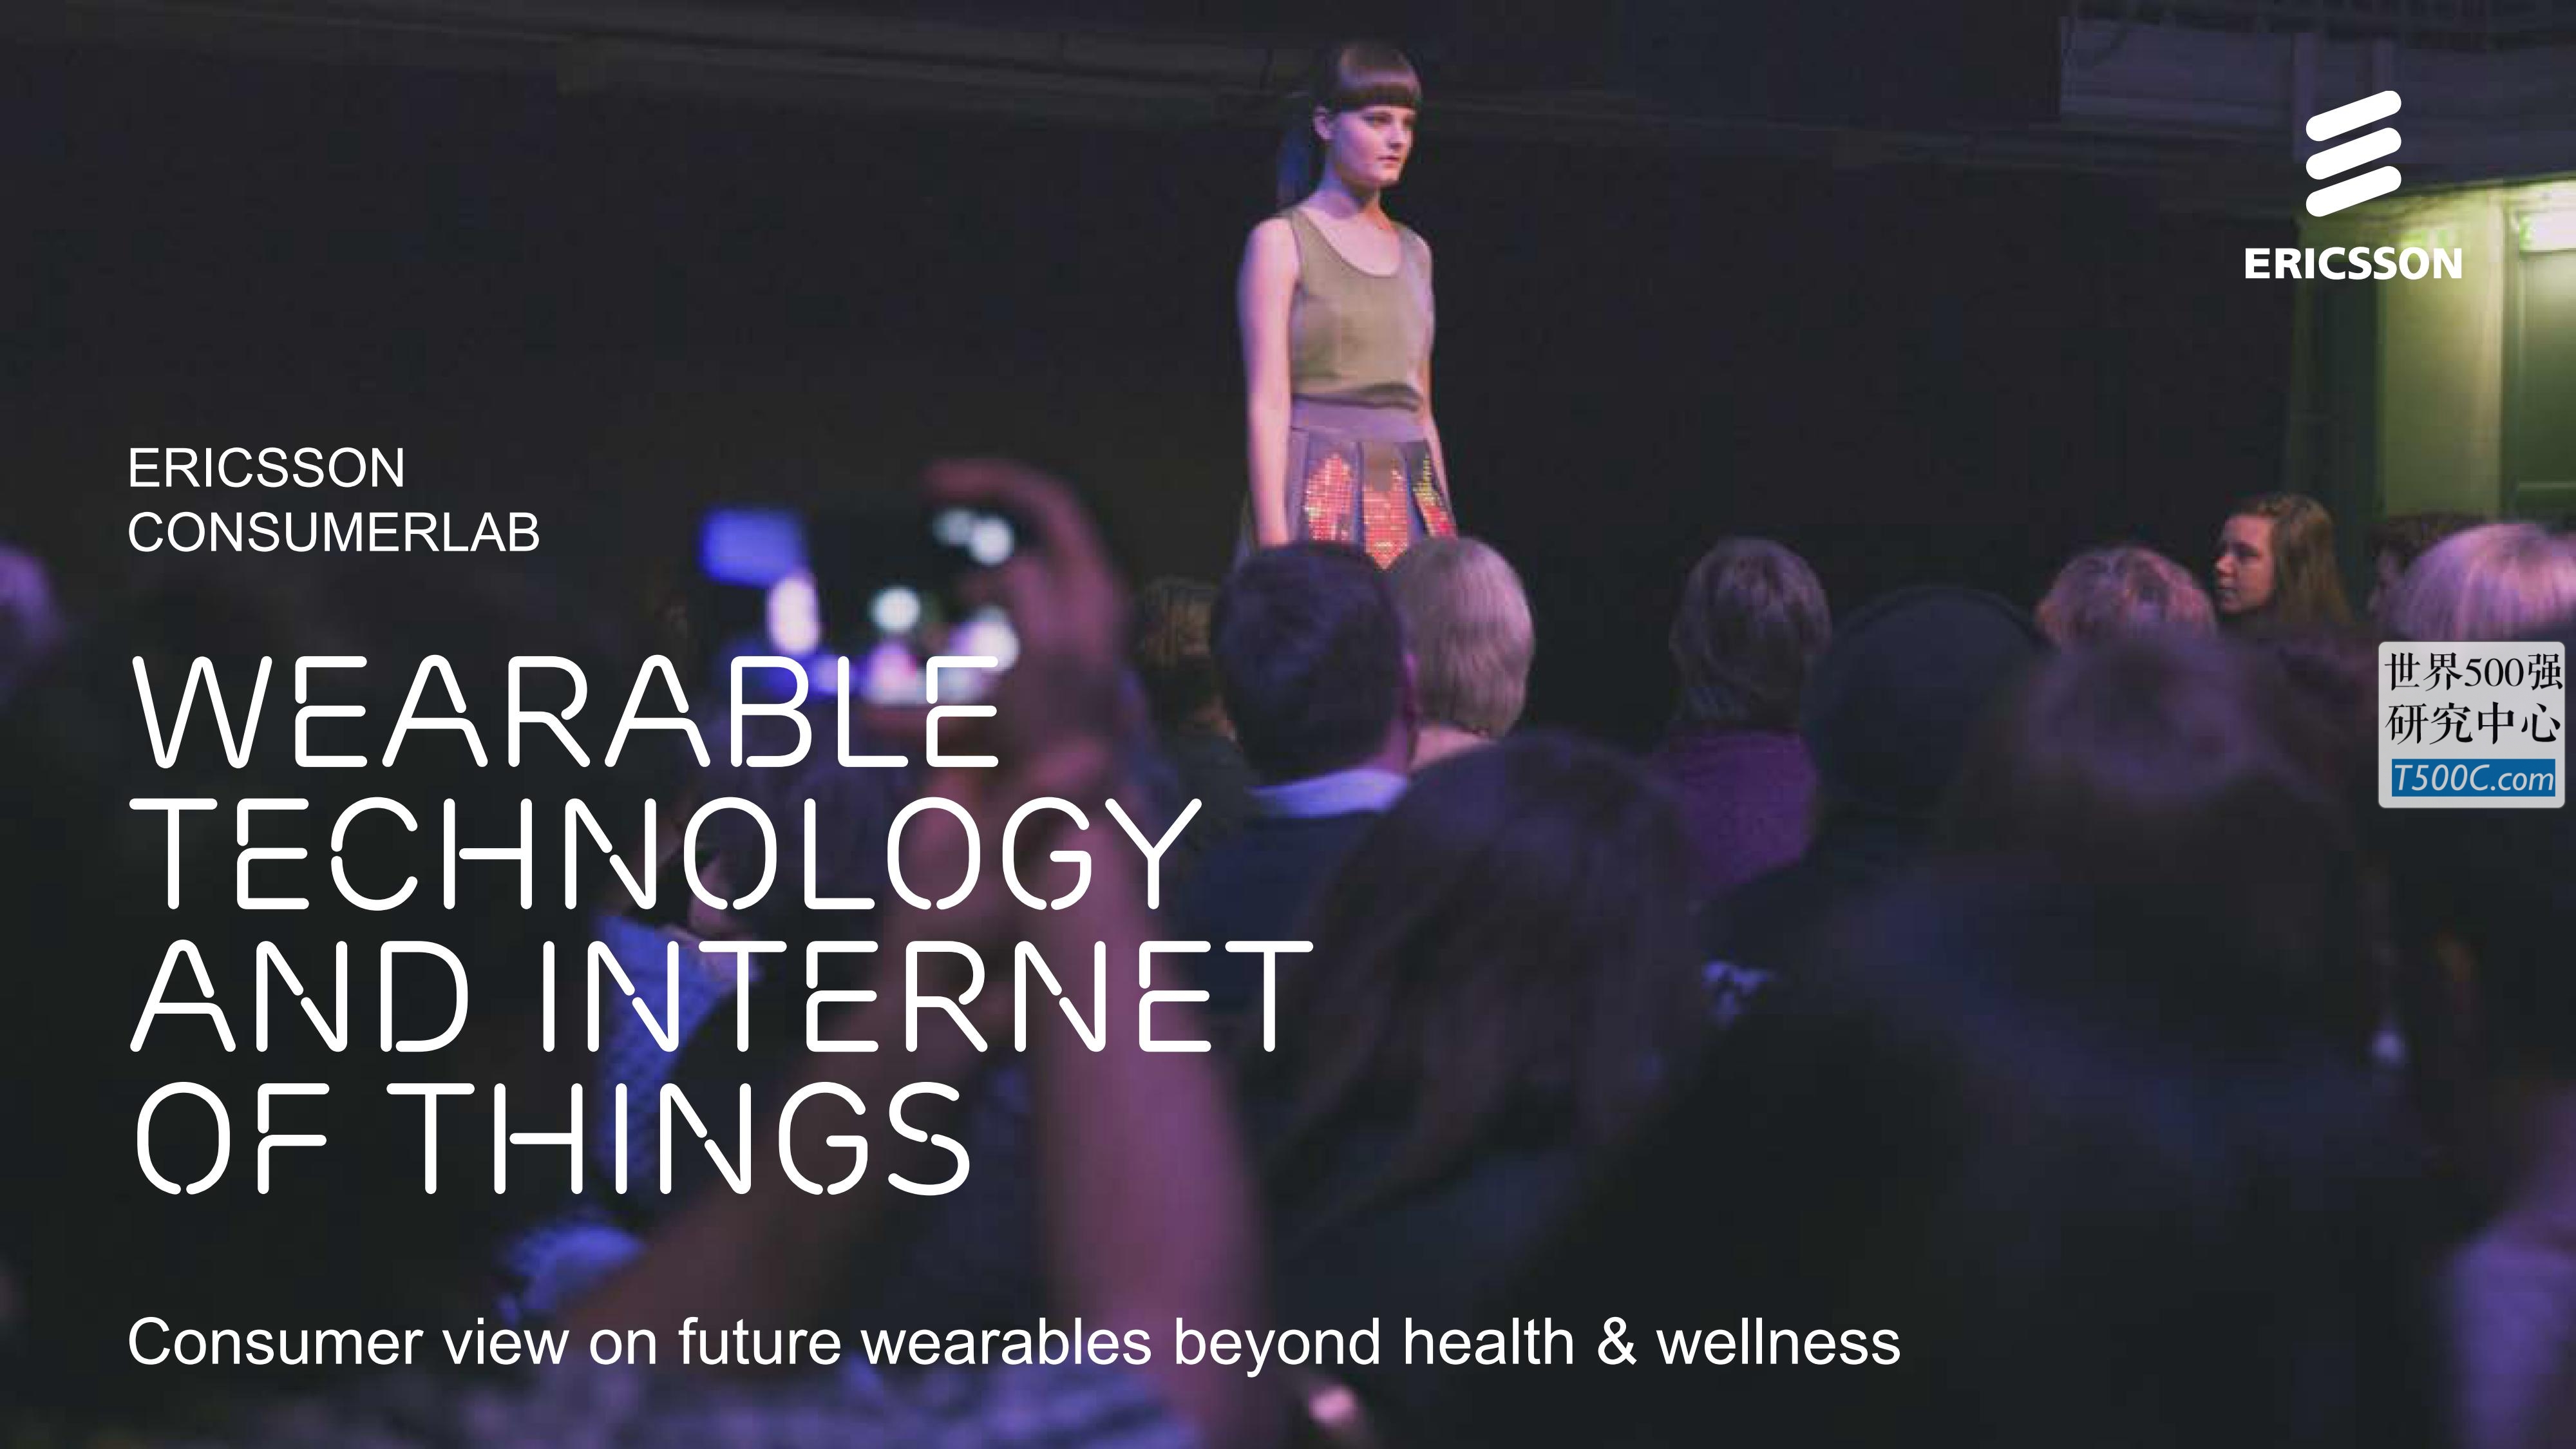 爱立信Ericsson_PPT样式_2016_T500C.com_wearable-technology-and-the-internet-of-things.pdf